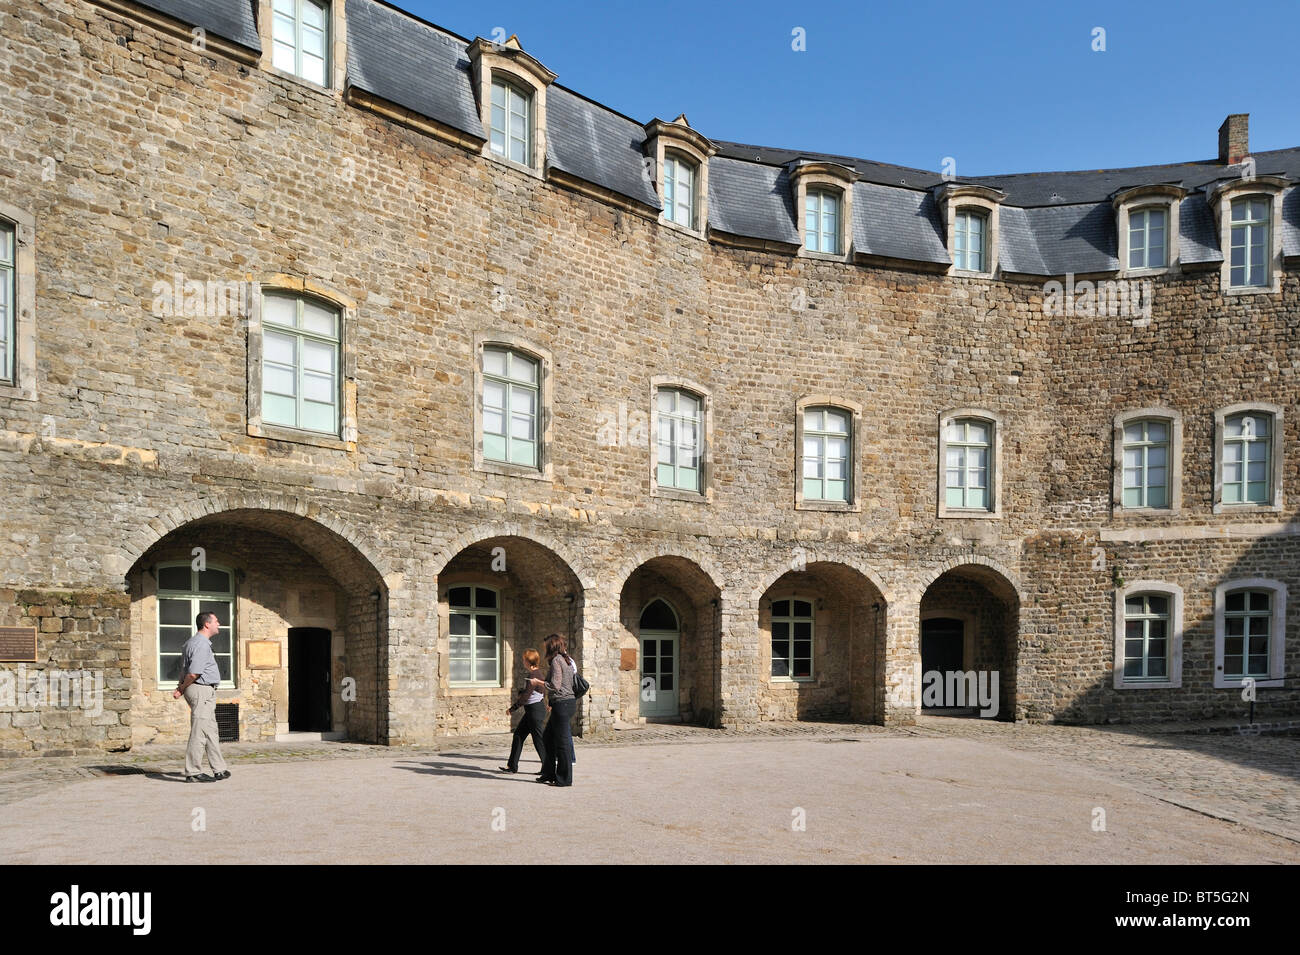 Le château / Château Musée de Boulogne-sur-Mer, France Banque D'Images